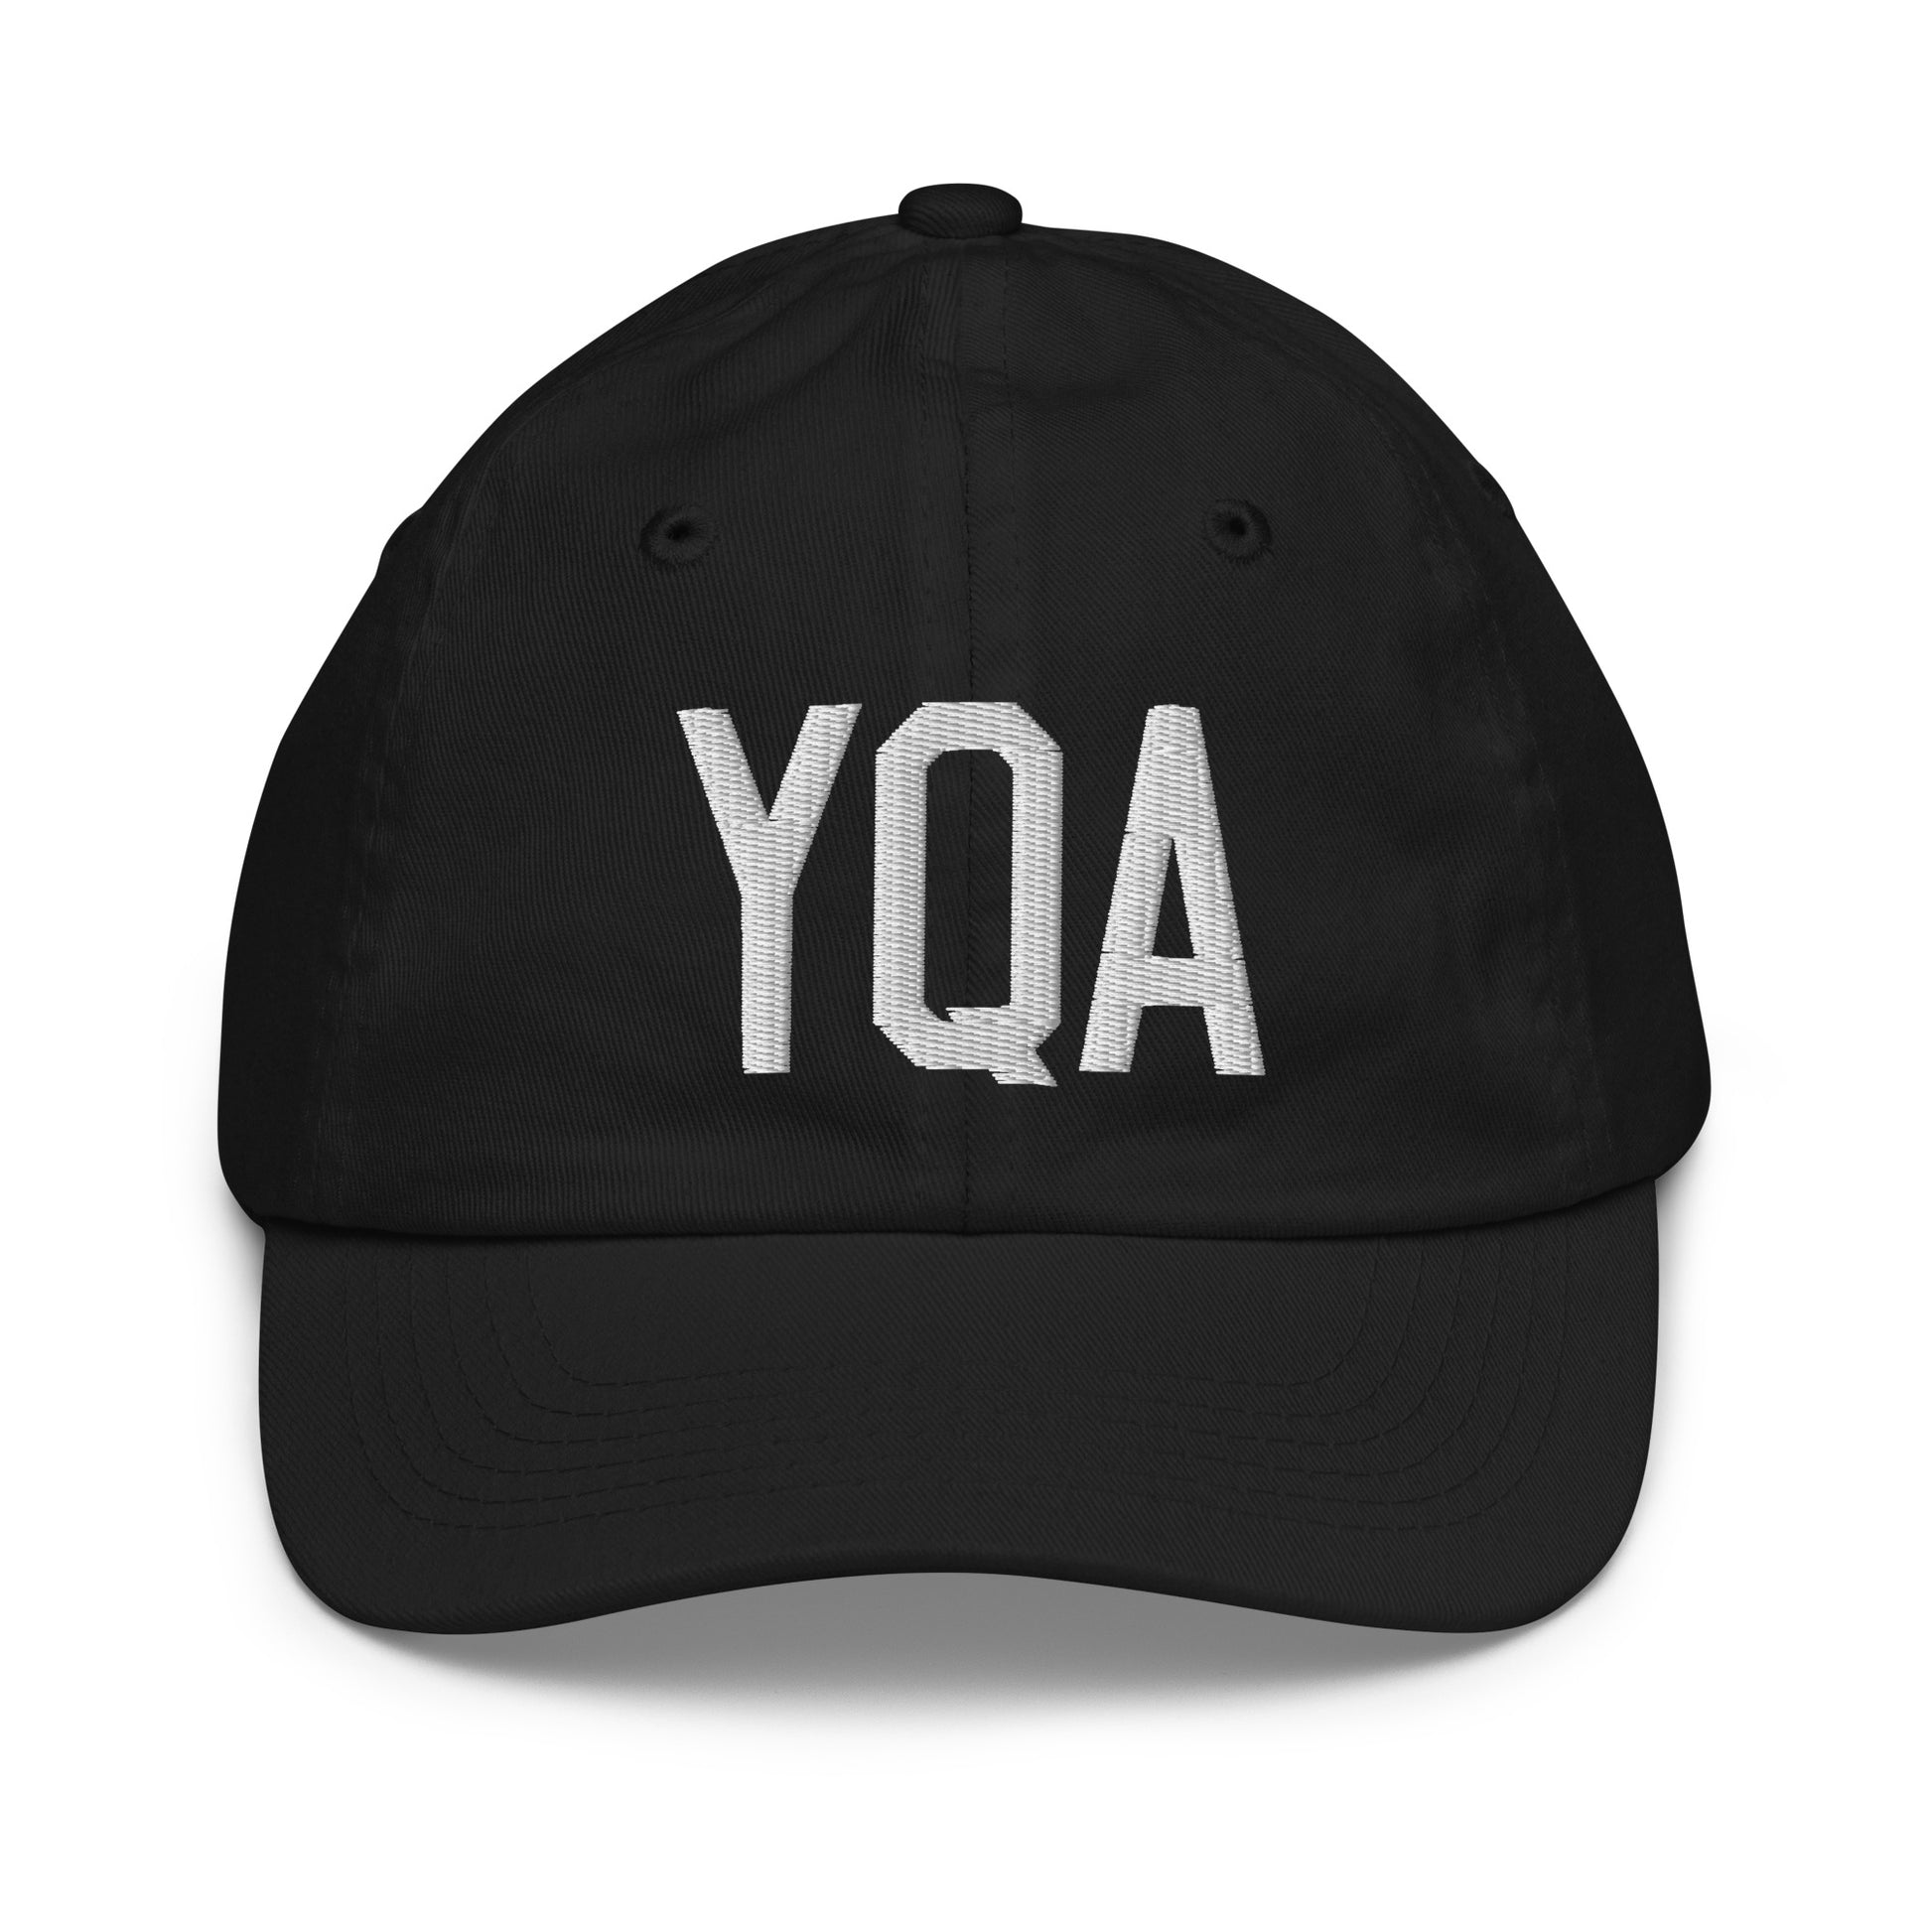 Airport Code Kid's Baseball Cap - White • YQA Muskoka • YHM Designs - Image 11